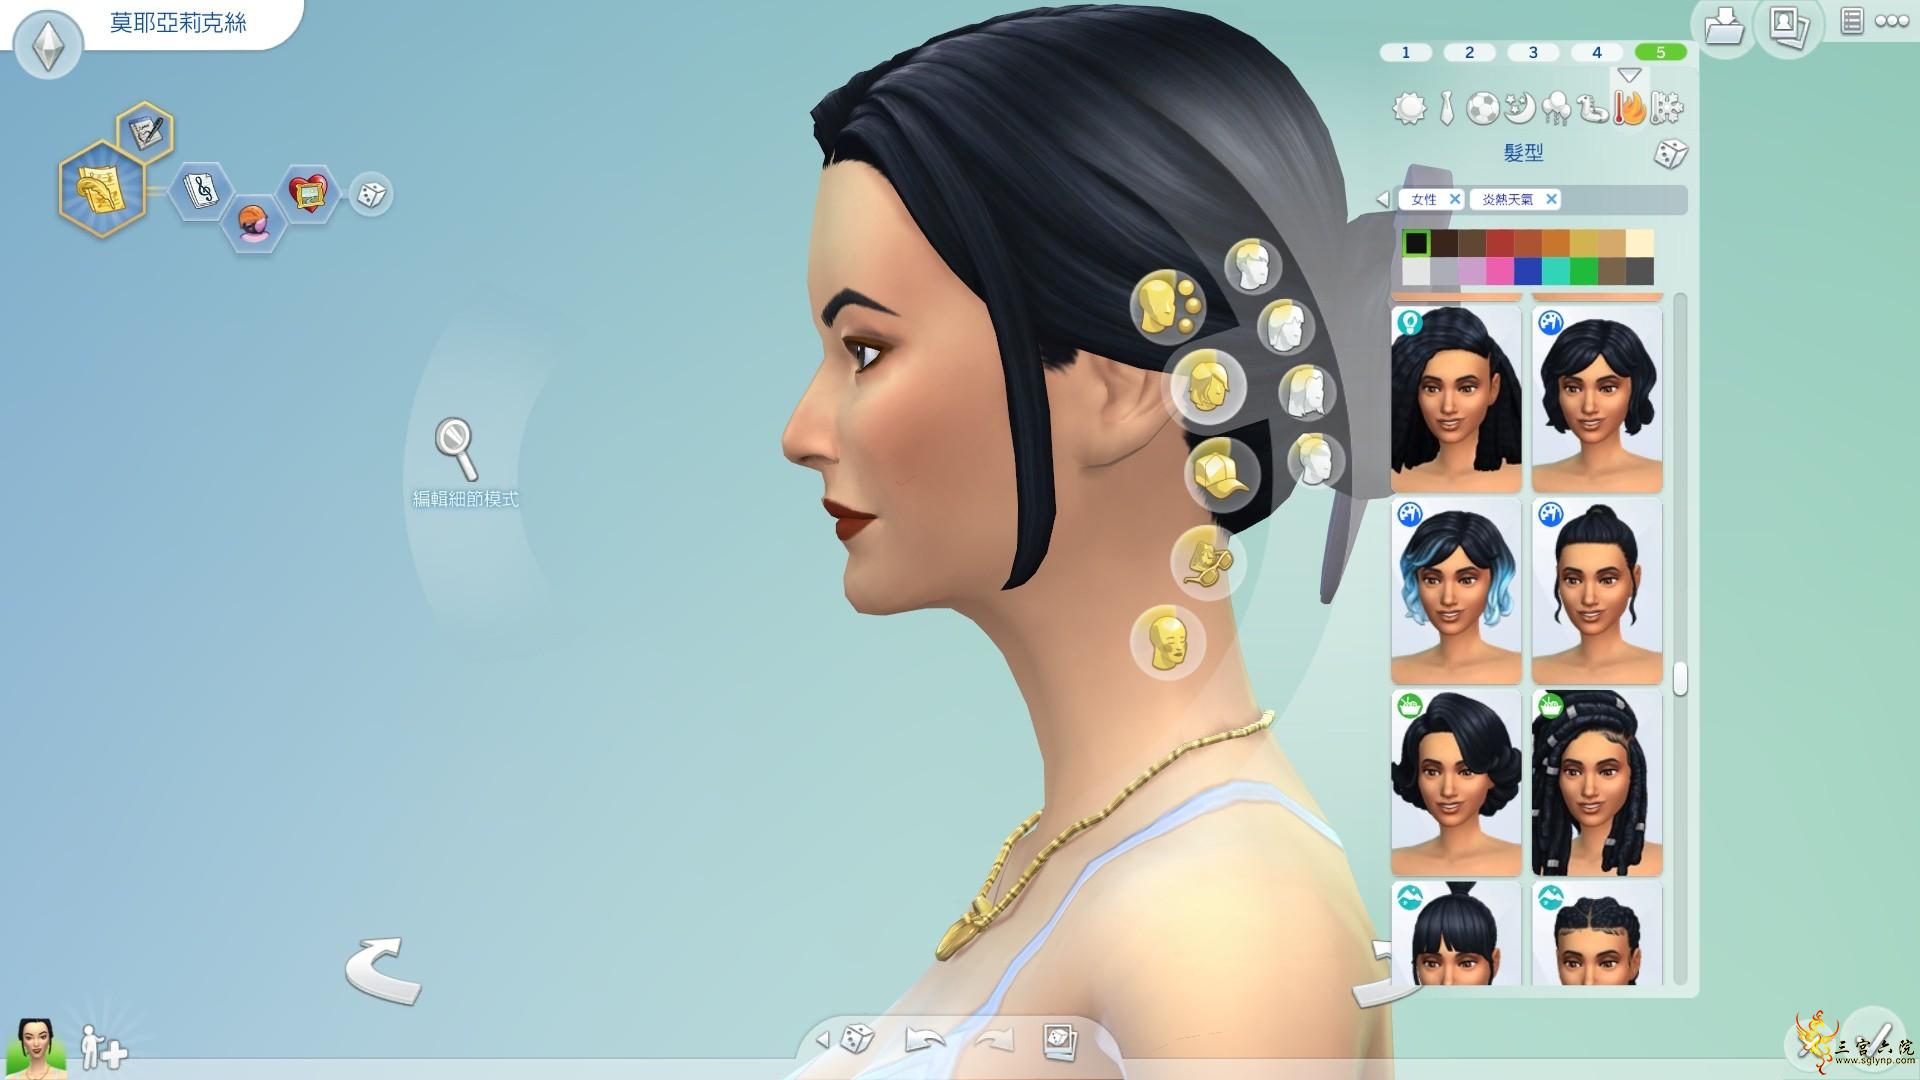 Sims 4 Screenshot 2021.07.17 - 18.31.33.61.png